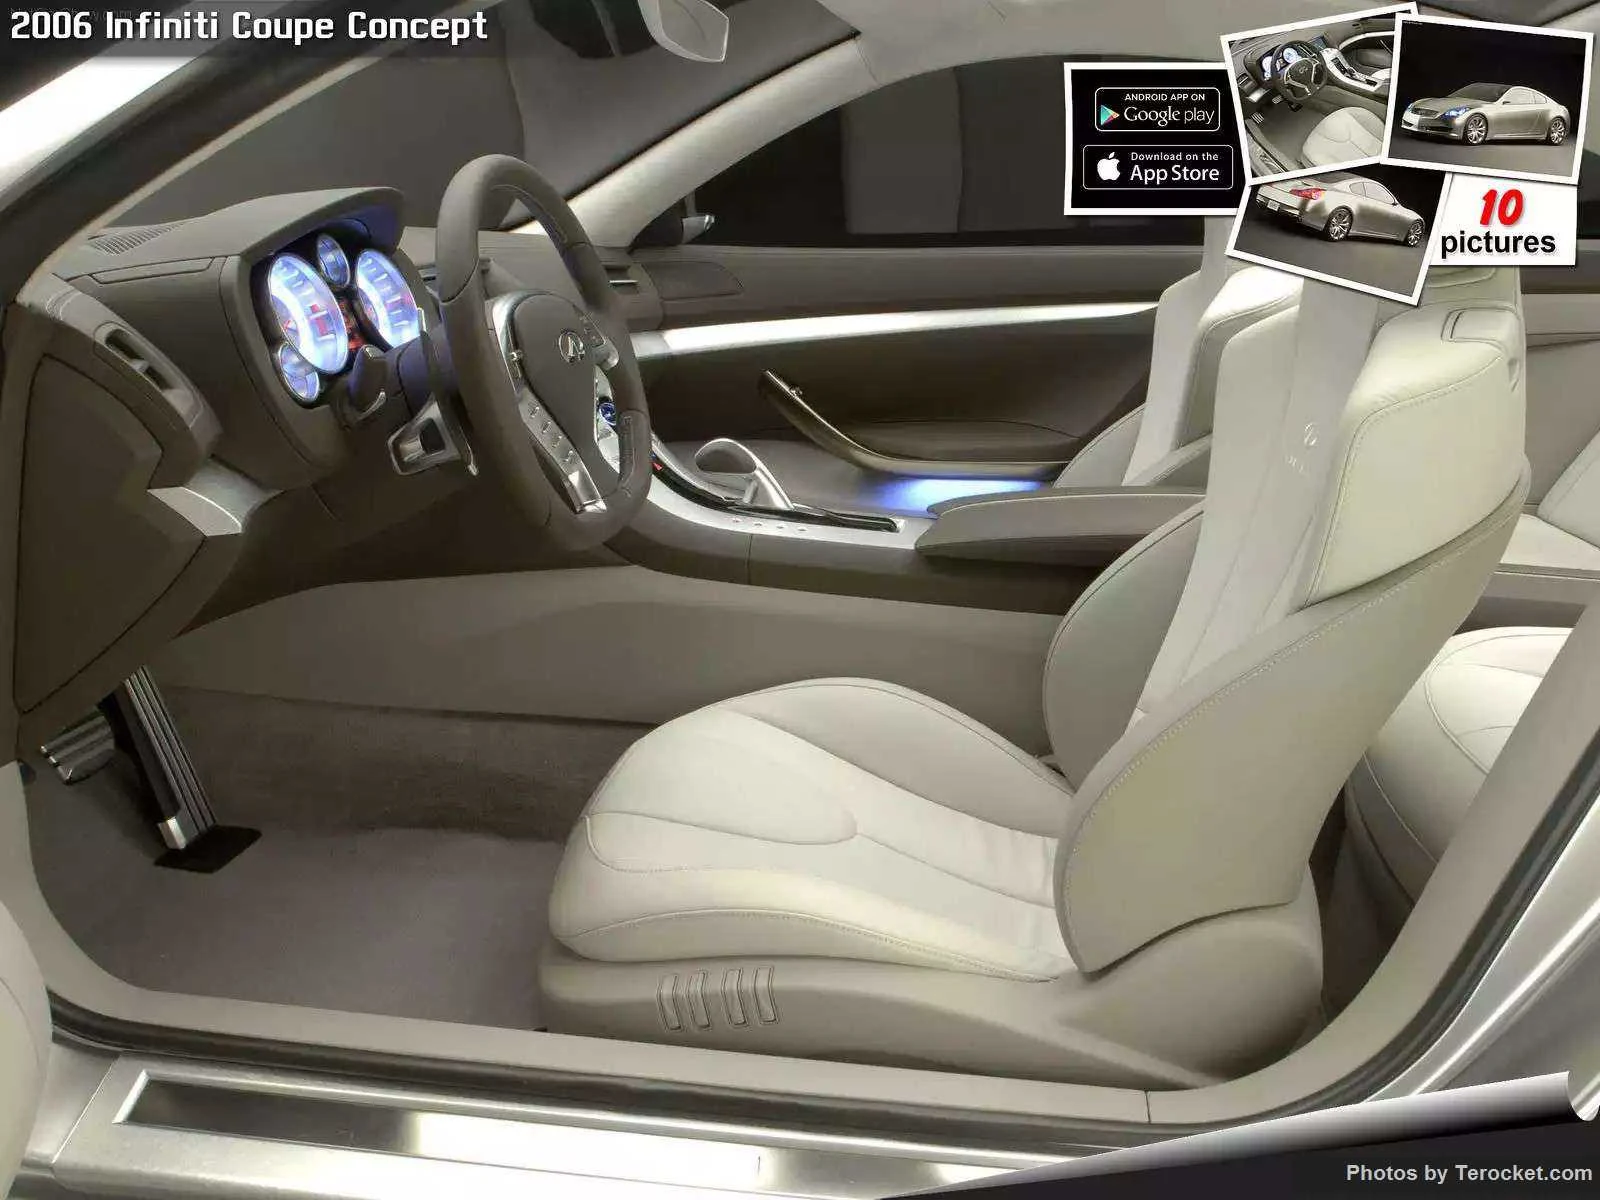 Hình ảnh xe ô tô Infiniti Coupe Concept 2006 & nội ngoại thất